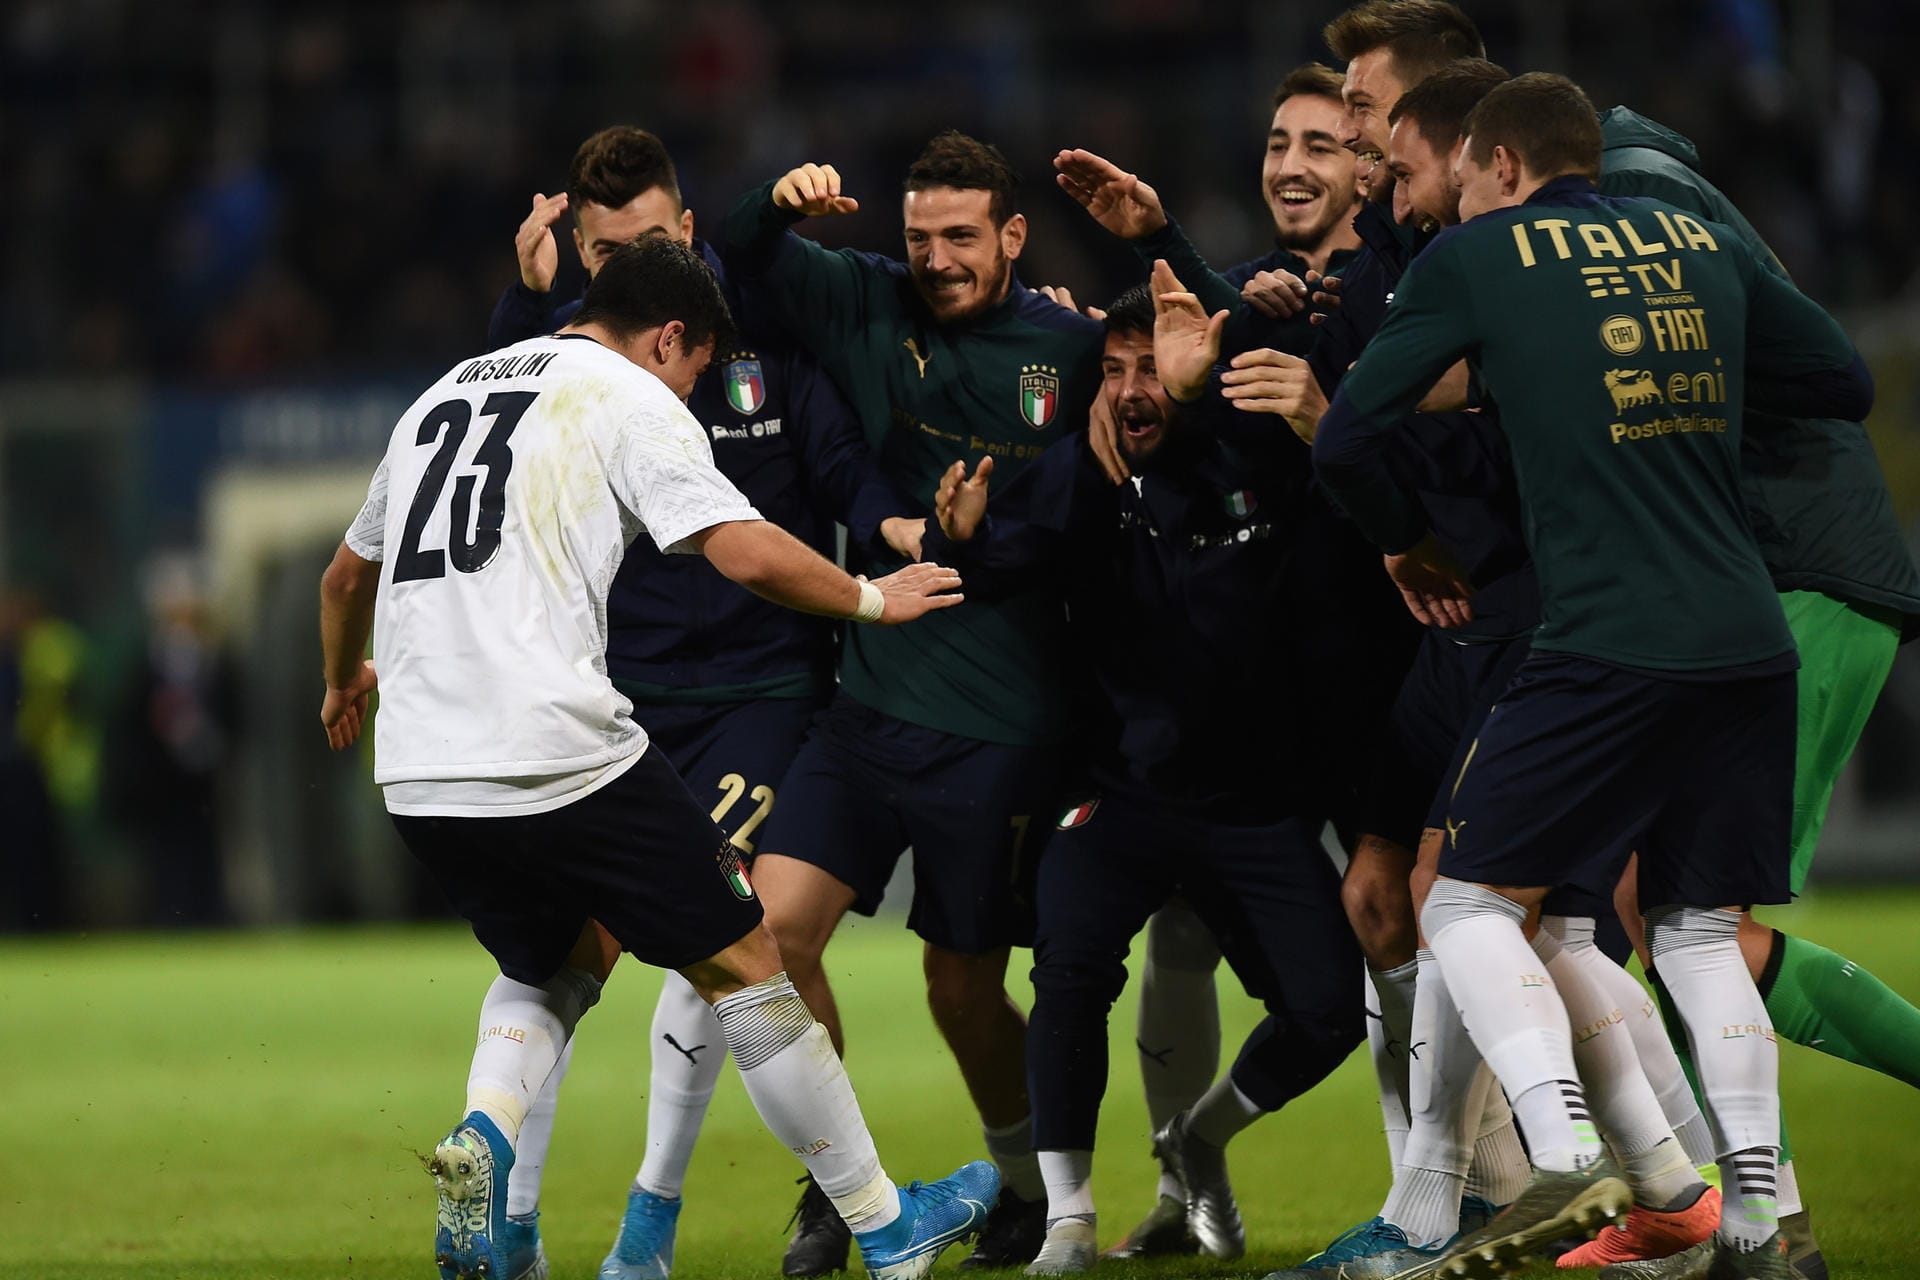 Italien hat den Umbruch geschafft. Nach dem Desaster der verpassten WM 2018 ist die "Squadra Azzurra" von Trainer Roberto Mancini seit nunmehr 41 EM-Qualifikationsspielen in Folge ungeschlagen. Höhepunkt: Das 9:1 im vorletzten Qualispiel gegen Armenien.